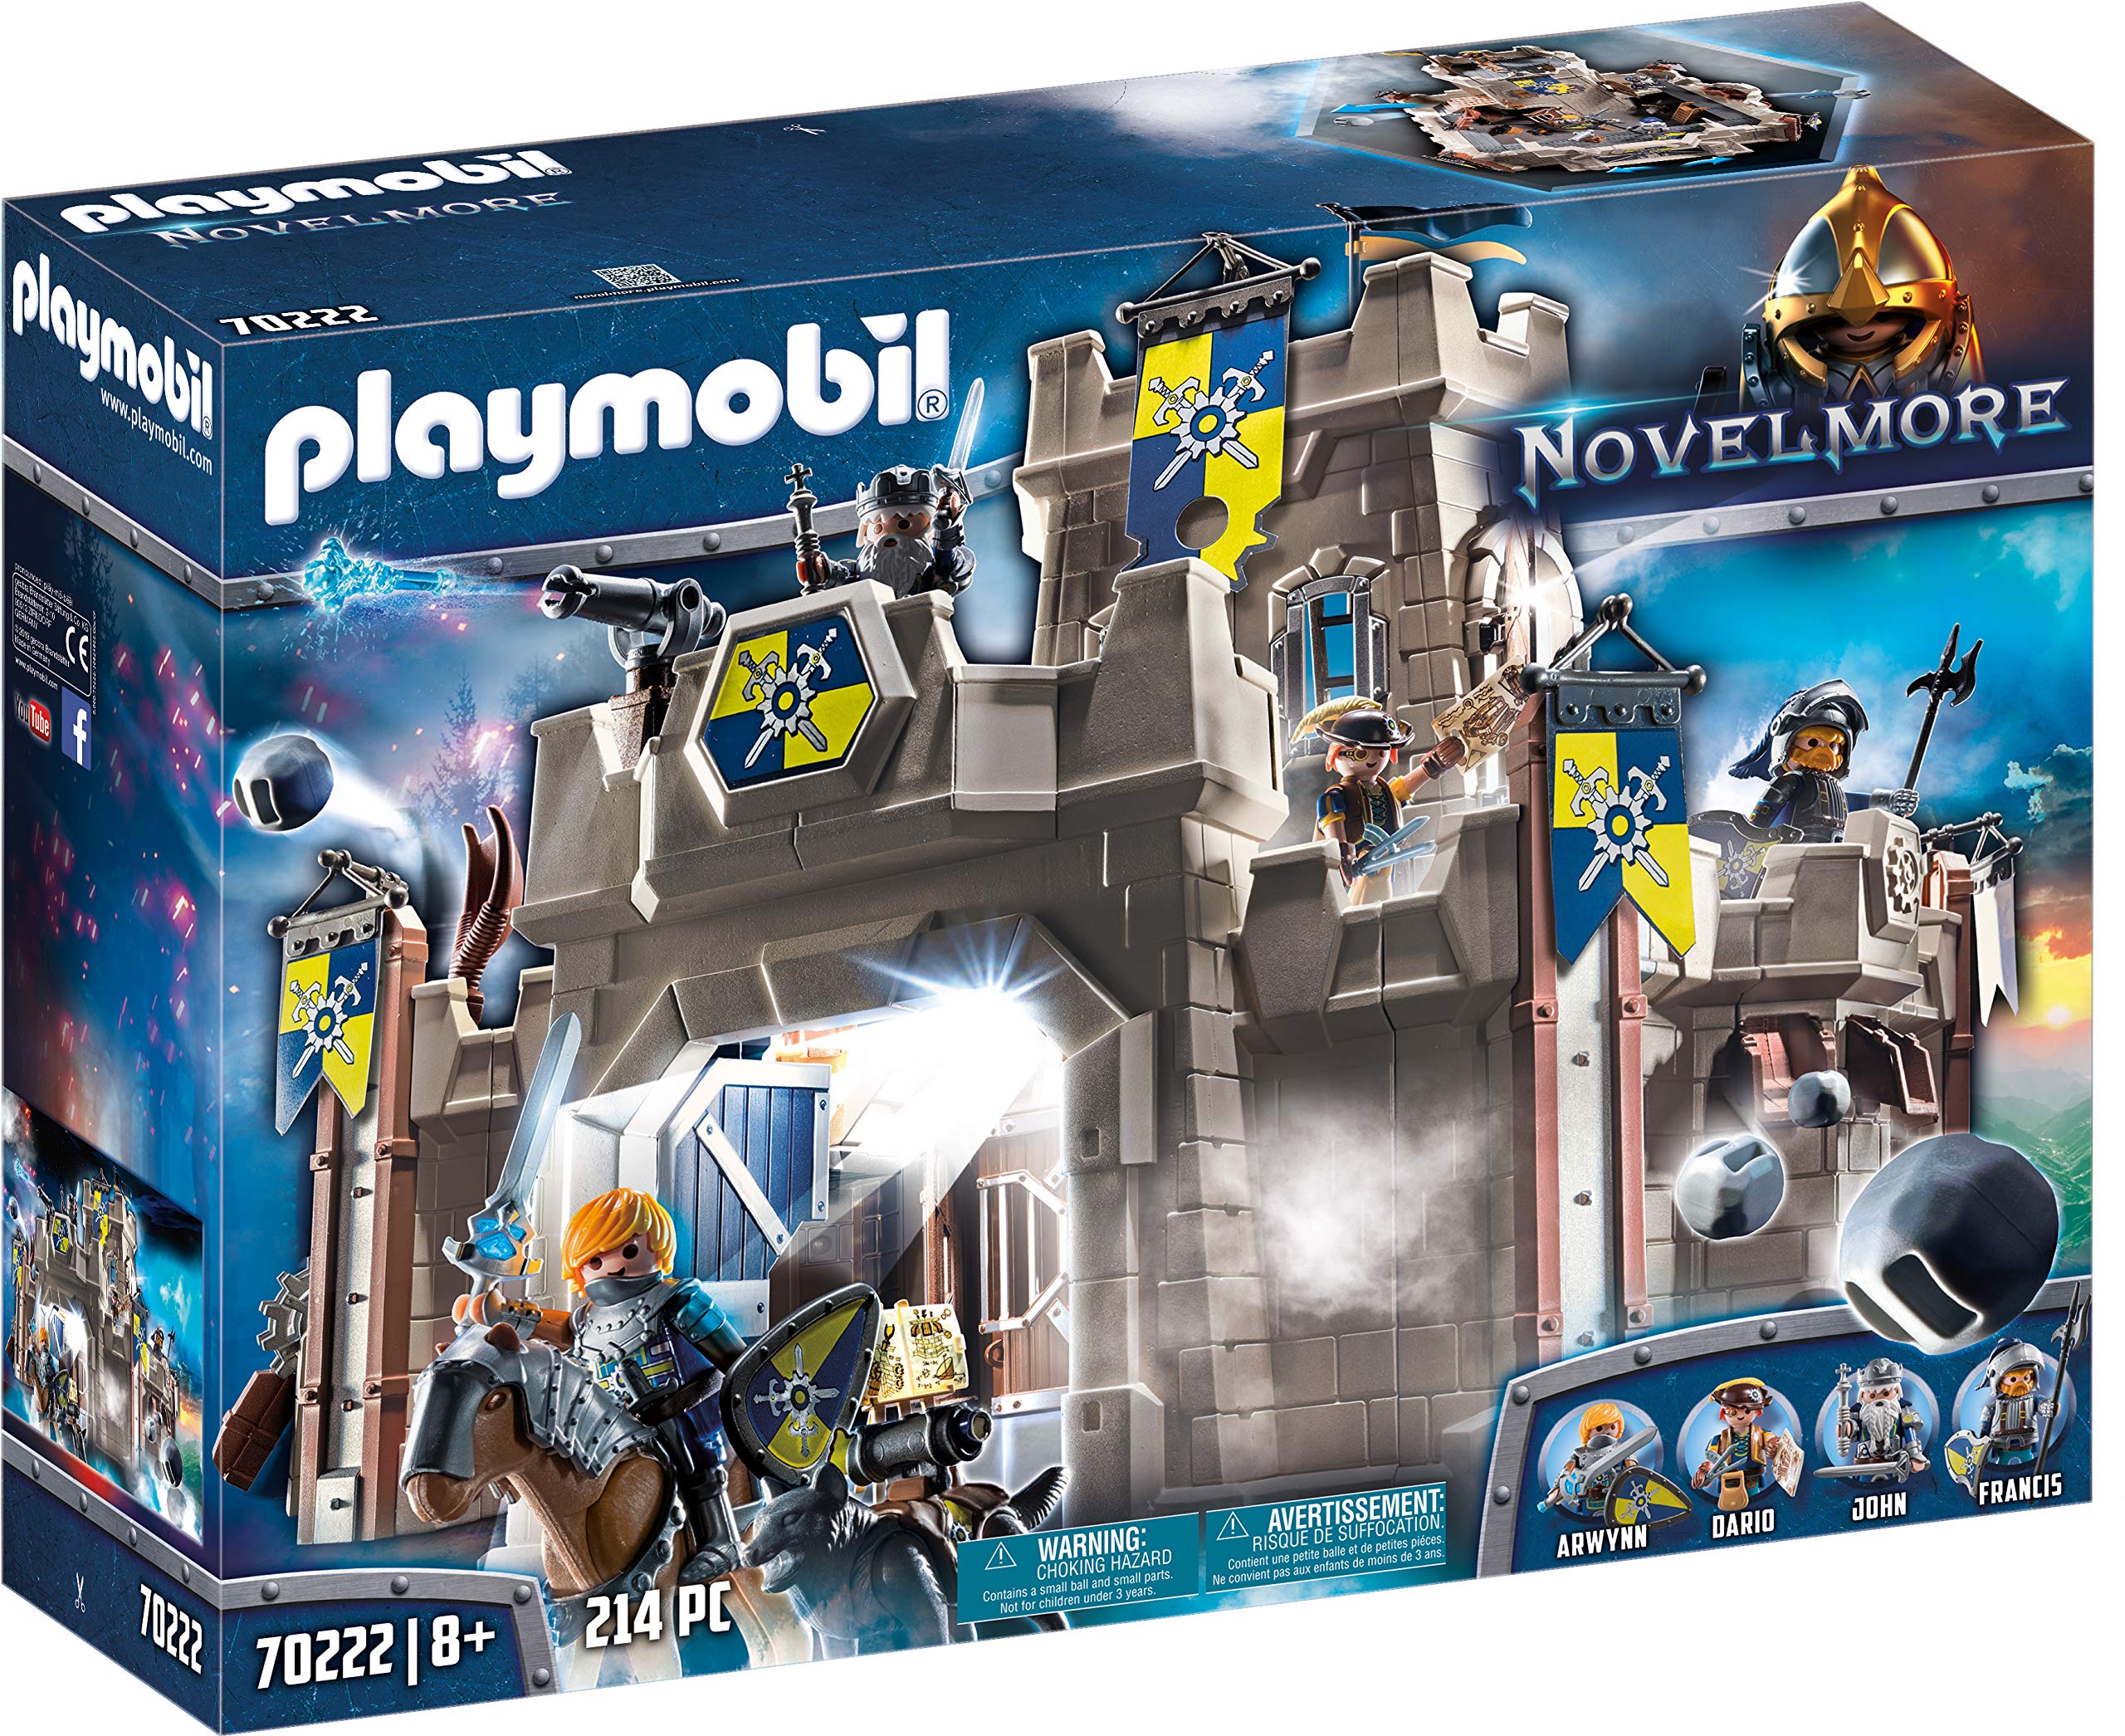 Infrarød knus For det andet Køb Playmobil - Novelmore Slot (70222) - Fri fragt